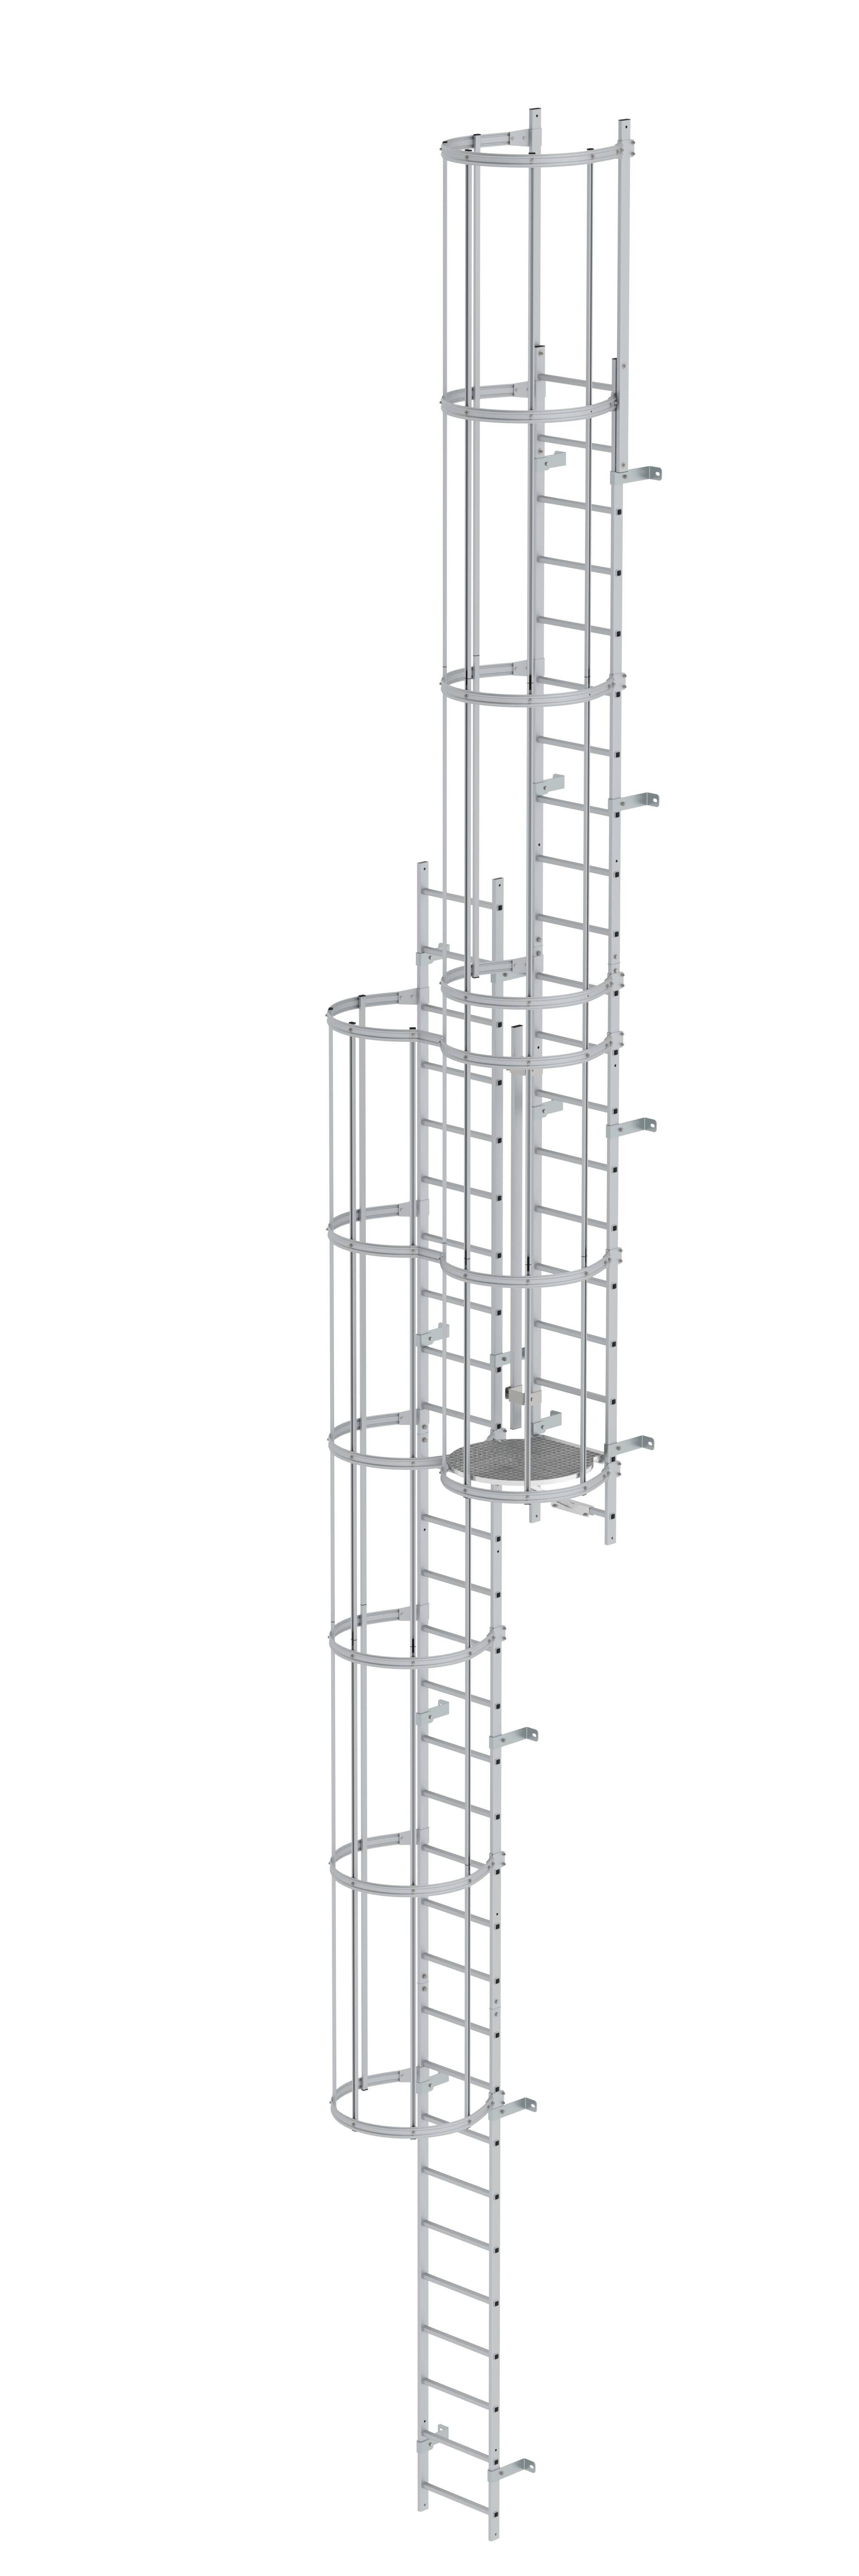 Mehrzügige Steigleiter mit Rückenschutz (Maschinen) Aluminium eloxiert 12,12m